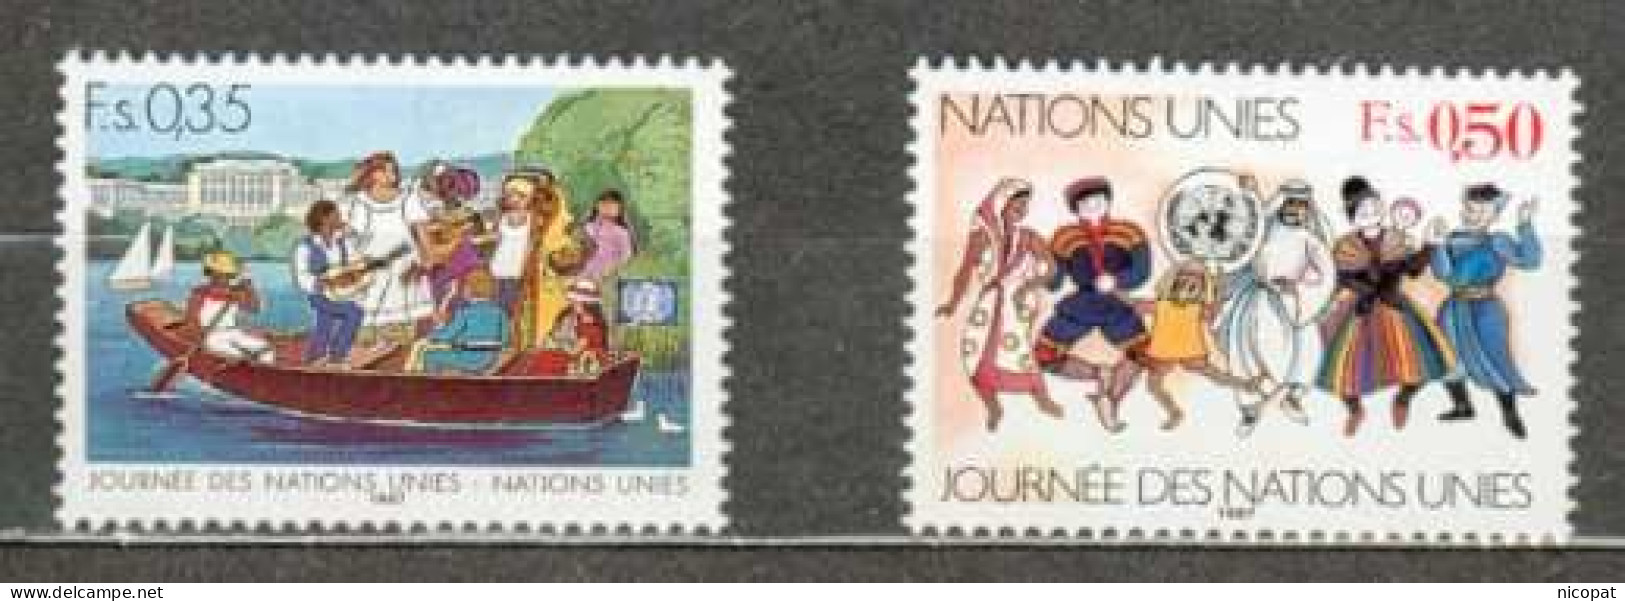 ONU GENEVE MNH ** 158-159 Journée Des Nations Unies Barque Sur Un Lac Costumes Nationaux Folklore - Ongebruikt